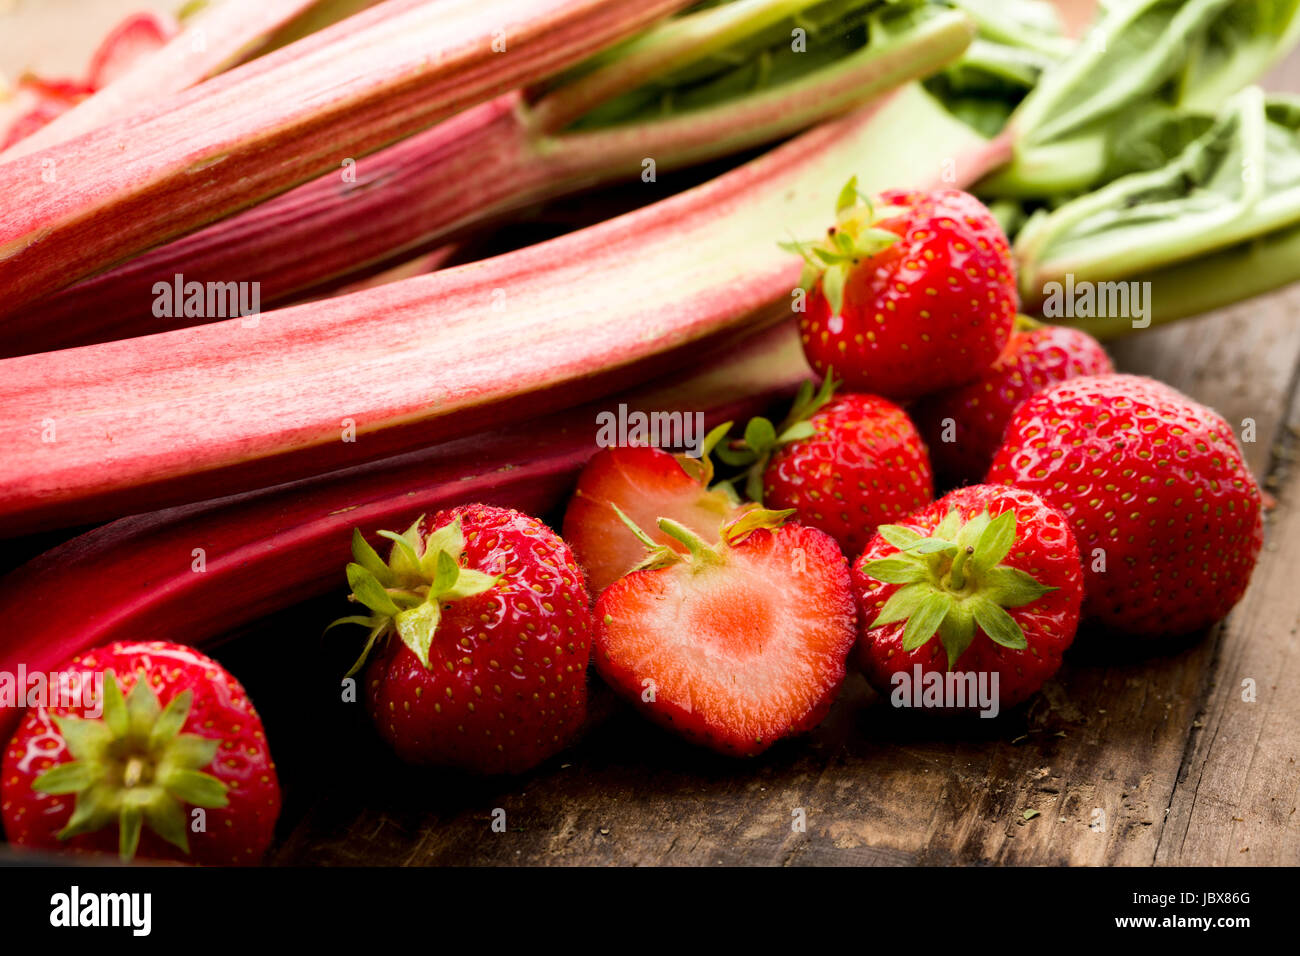 Frischer Rhababer und Erdbeeren auf einen Holz untergrund Foto Stock